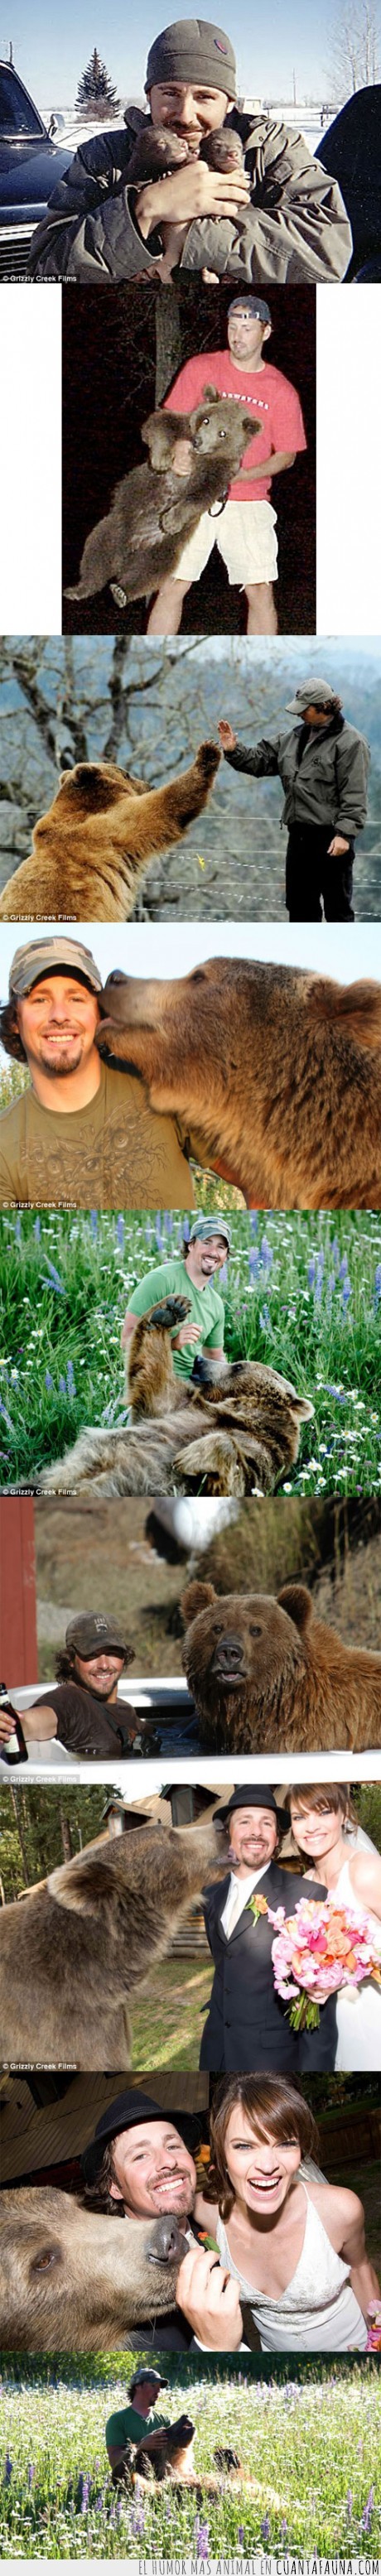 oso,amigo,hombre